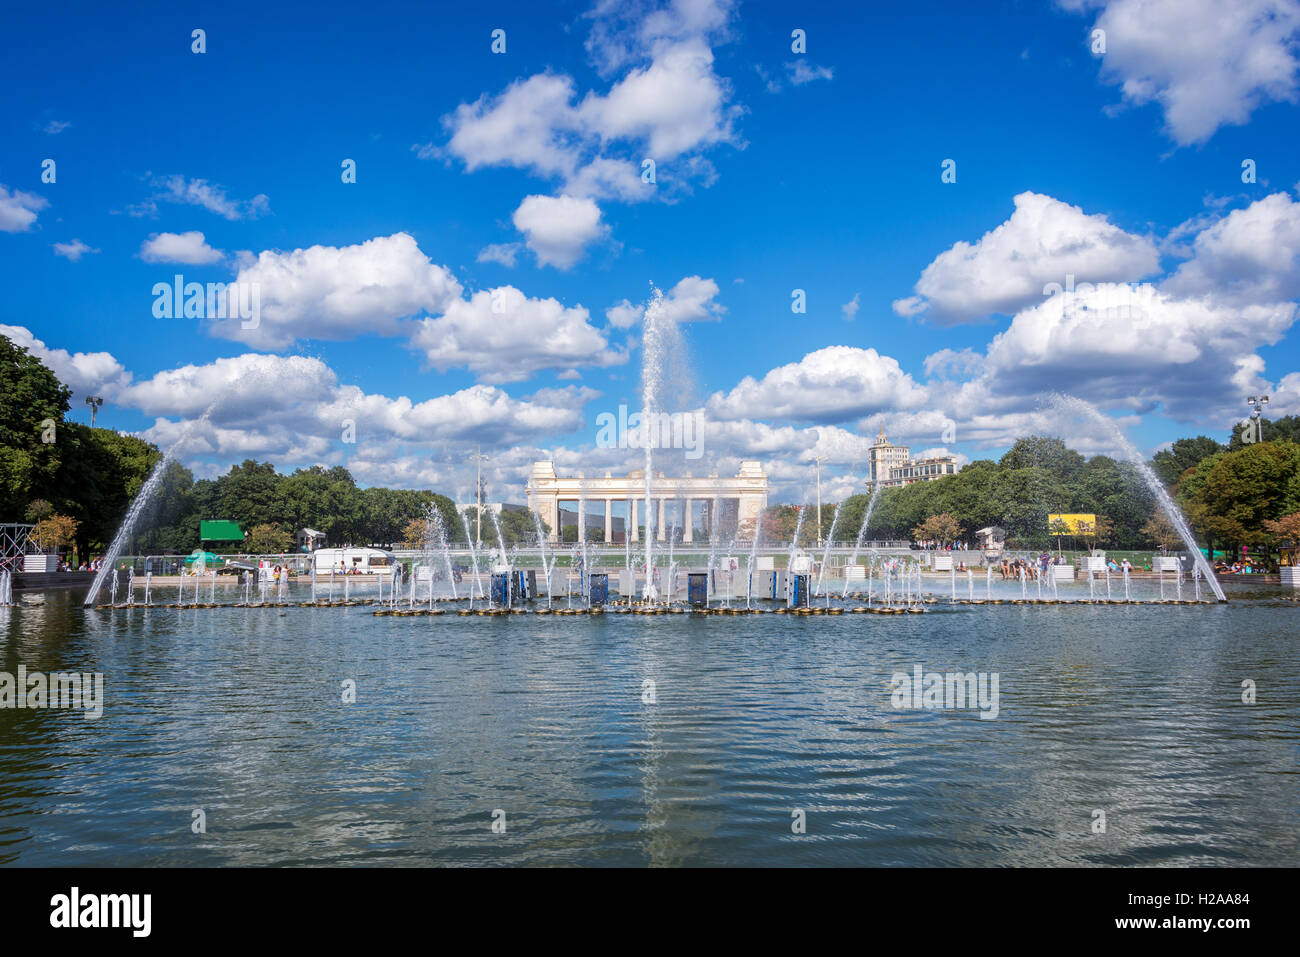 Fontaine dans le parc Gorky, Moscou, Russie Banque D'Images